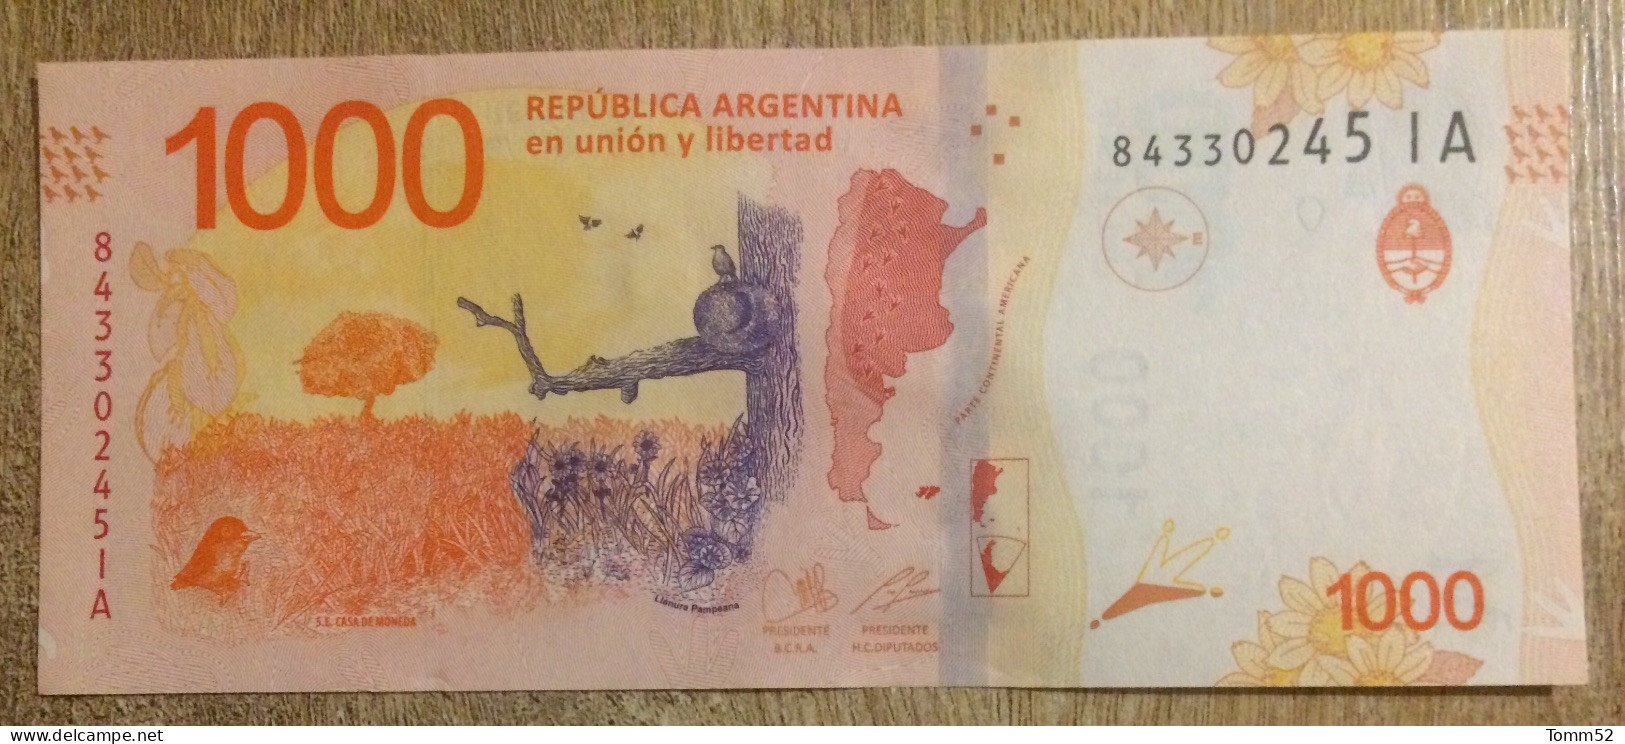 ARGENTINA 1000 Pesos UNC - Argentina